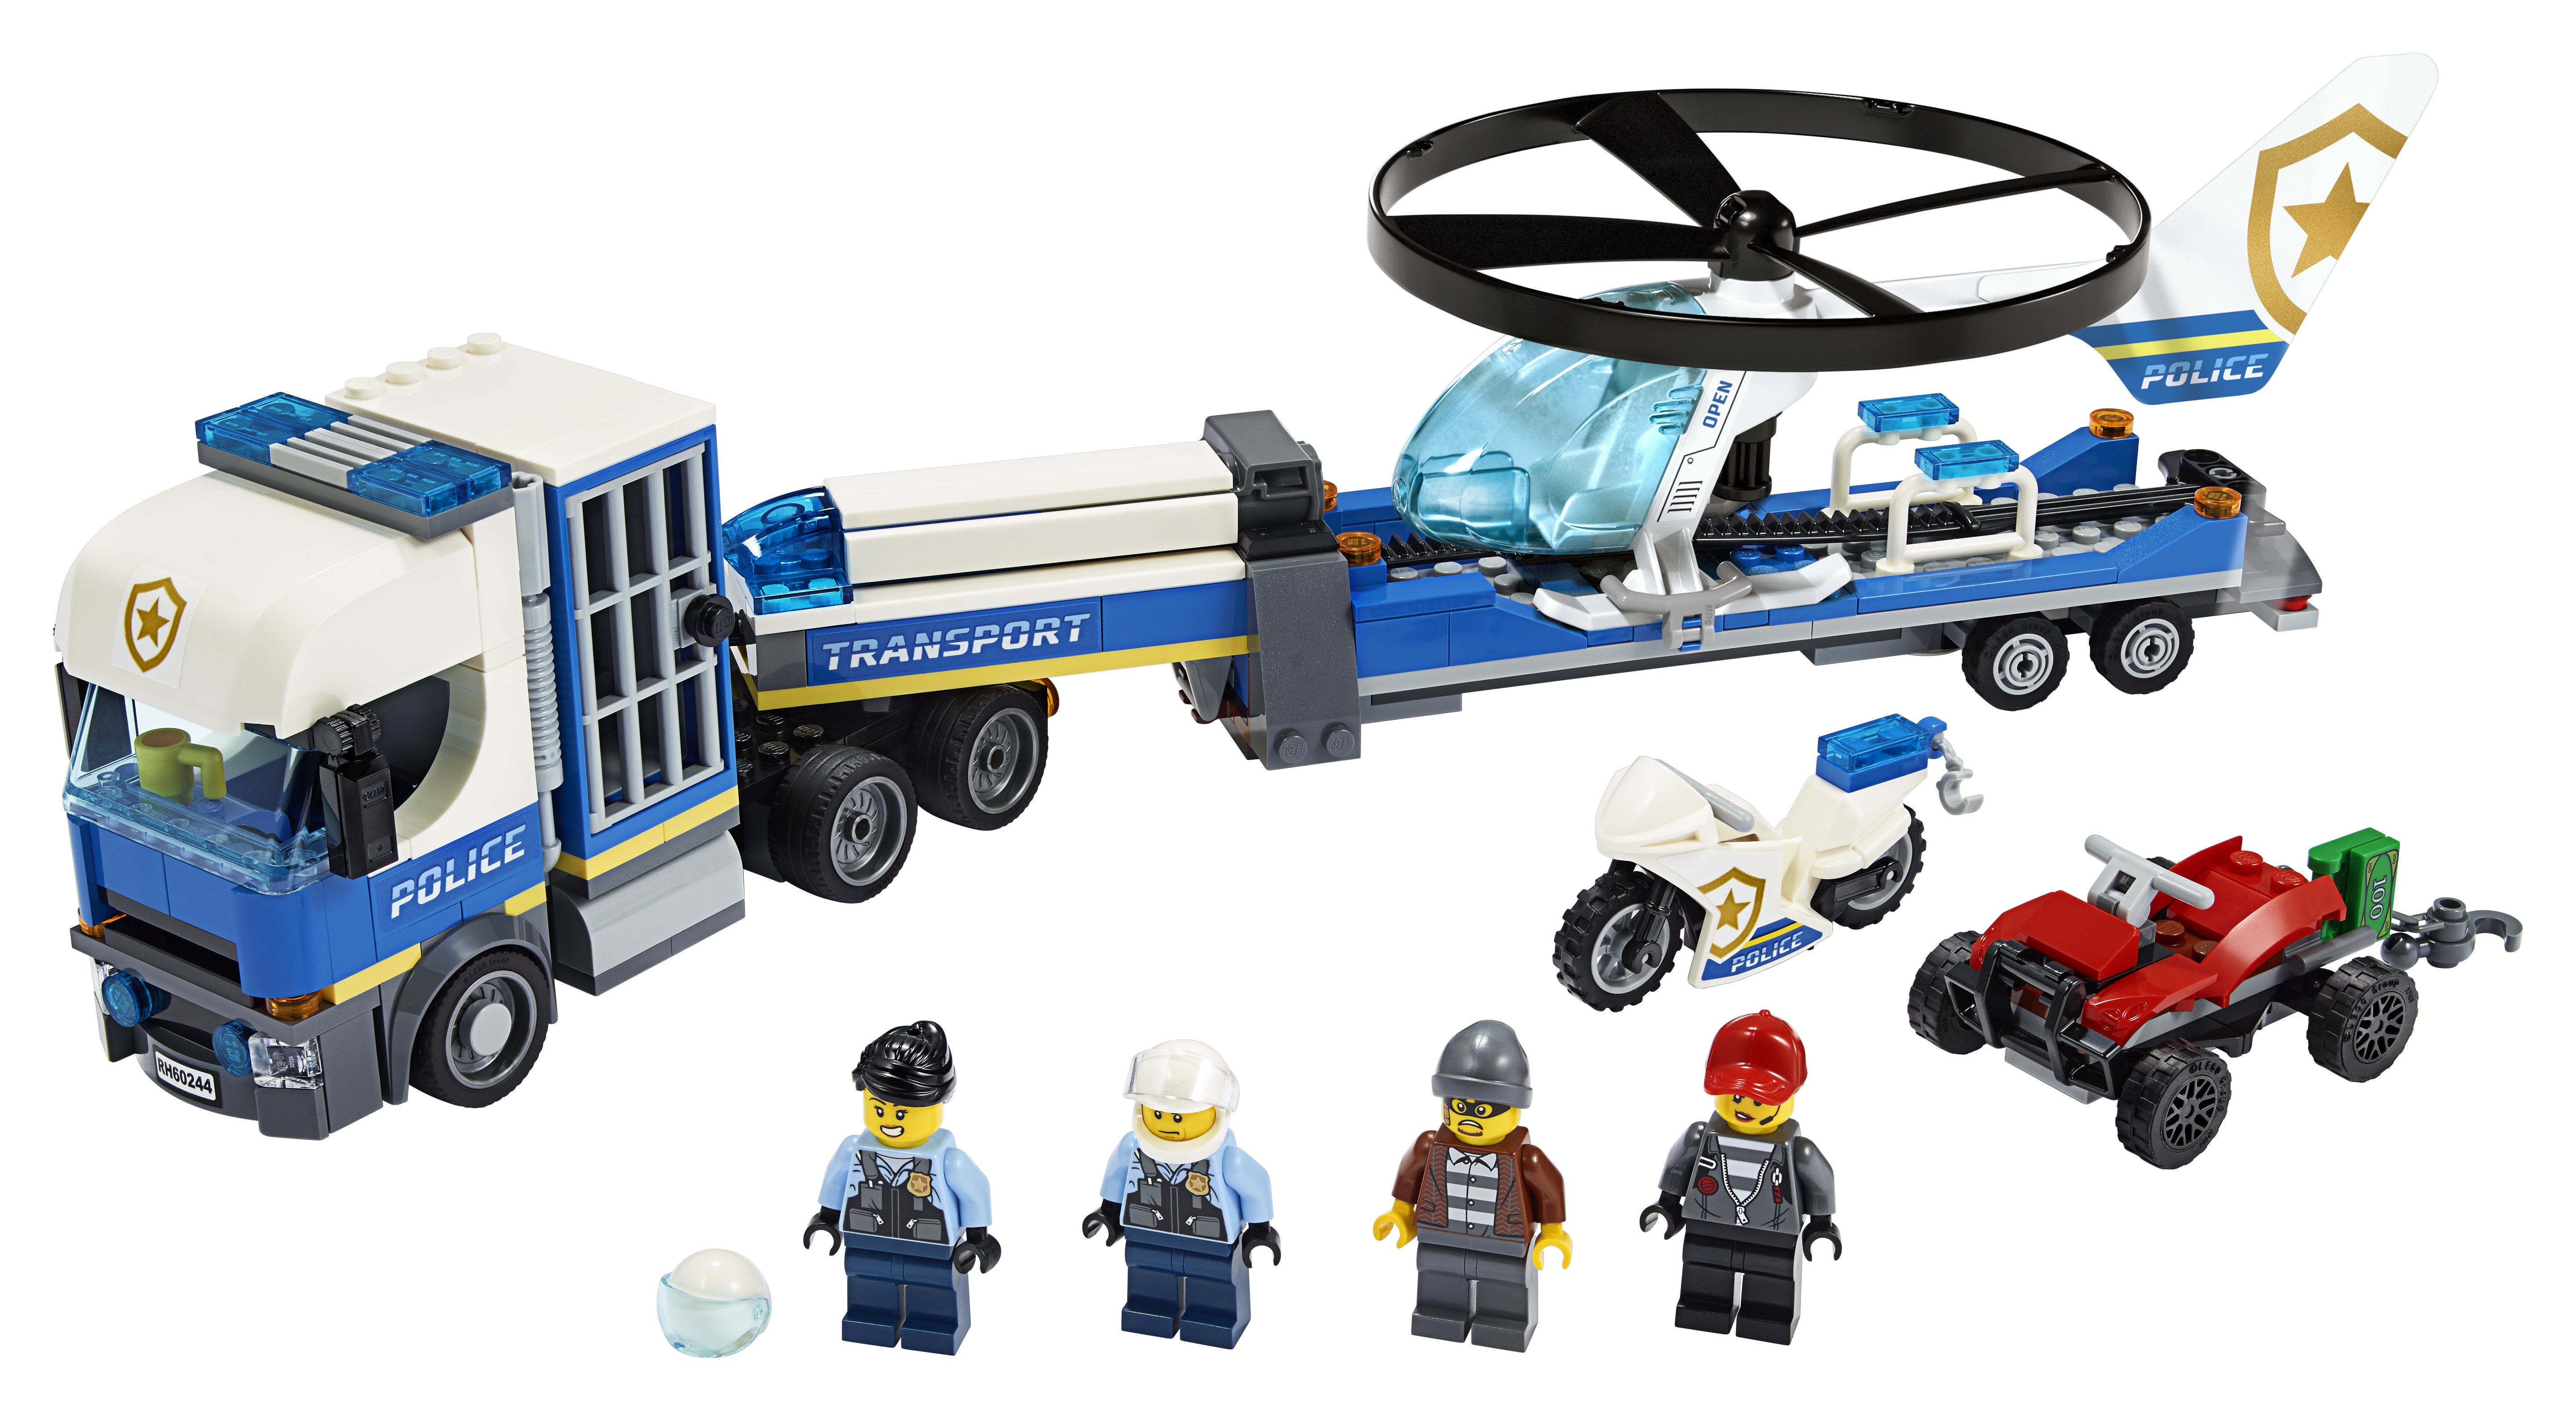 LEGO® City Police Helicopter Transporter Set 60244 Default Title